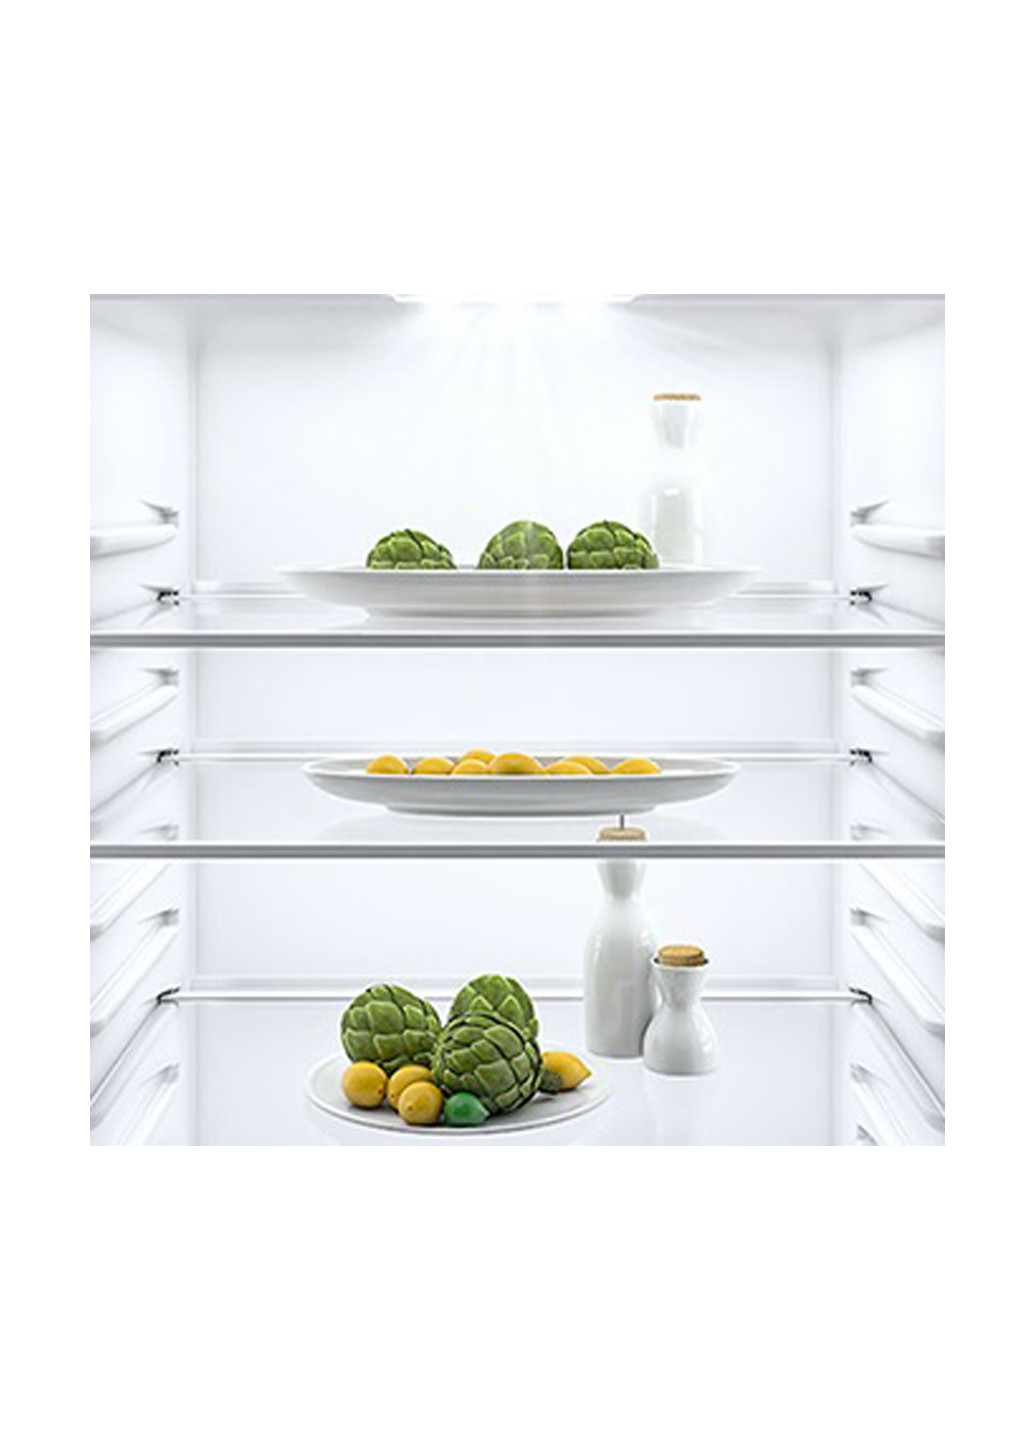 Холодильник комби ATLANT ХМ 4625-101